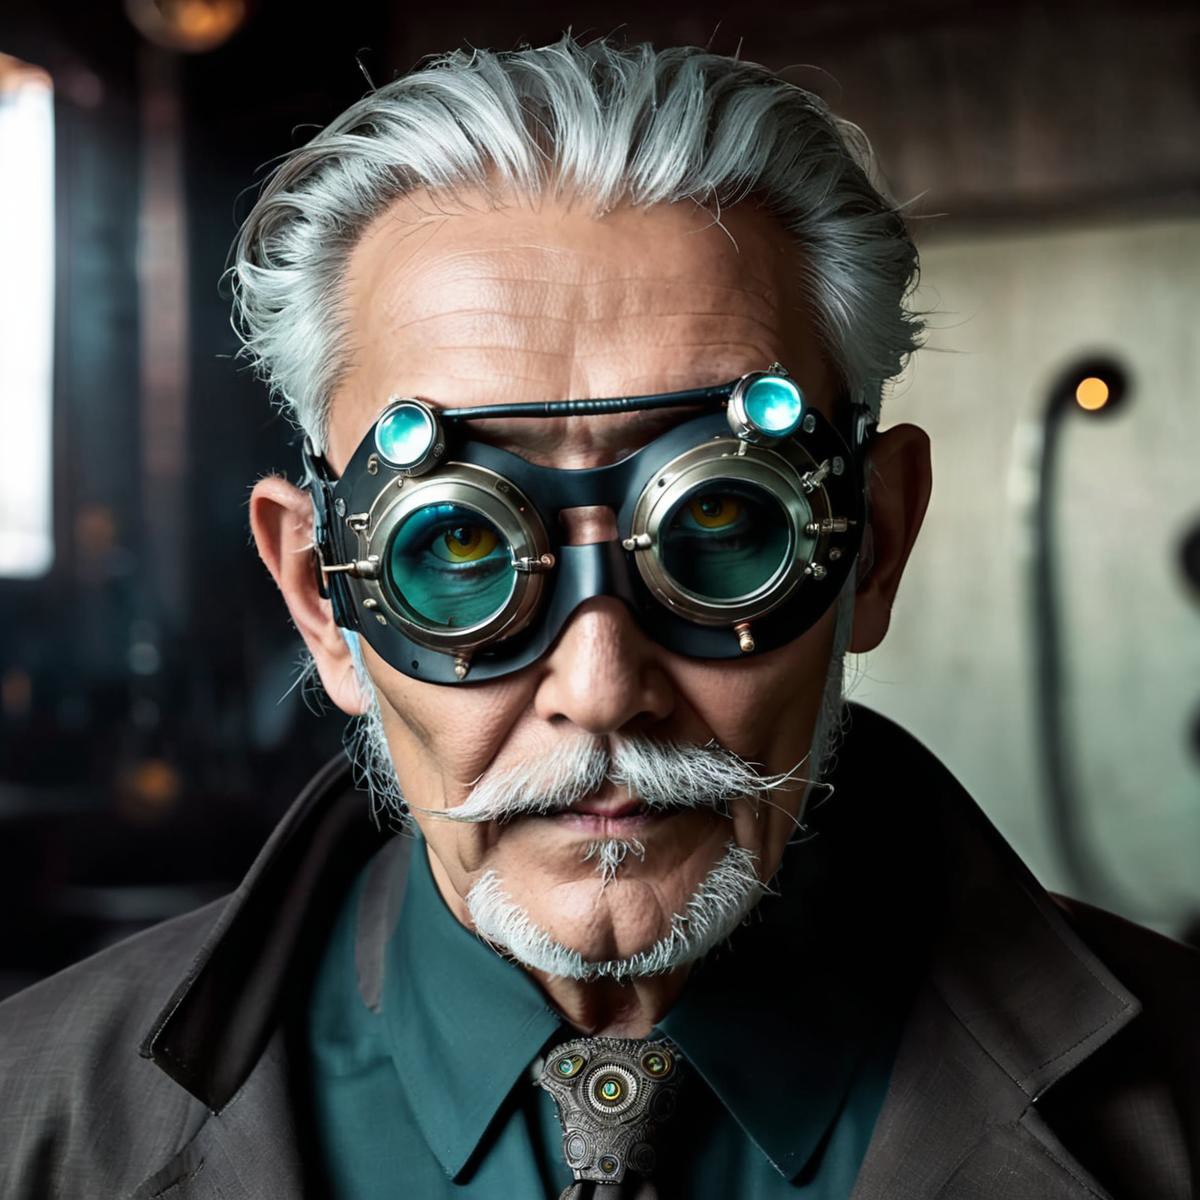 old evil scientist,man, cyberpunk, mask, wrathful eyes, dark science lab, steampunk sun glasses, dark atmosphere, Homunculus